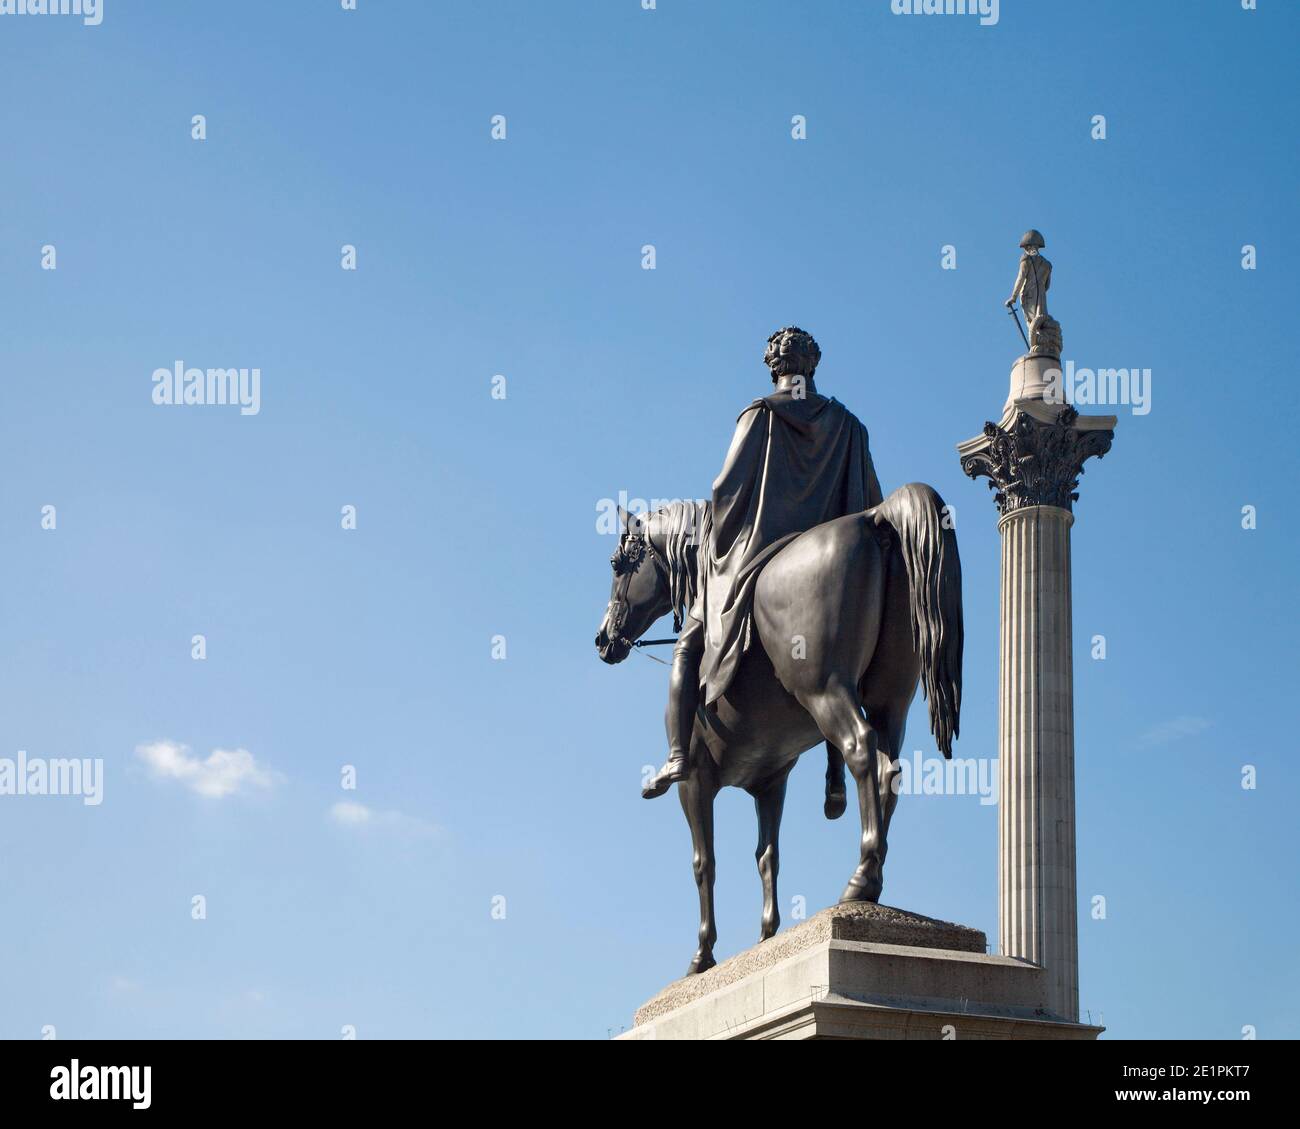 Londres - la colonne admirale Nelson et la place du roi Charles I Trafalgar. Banque D'Images